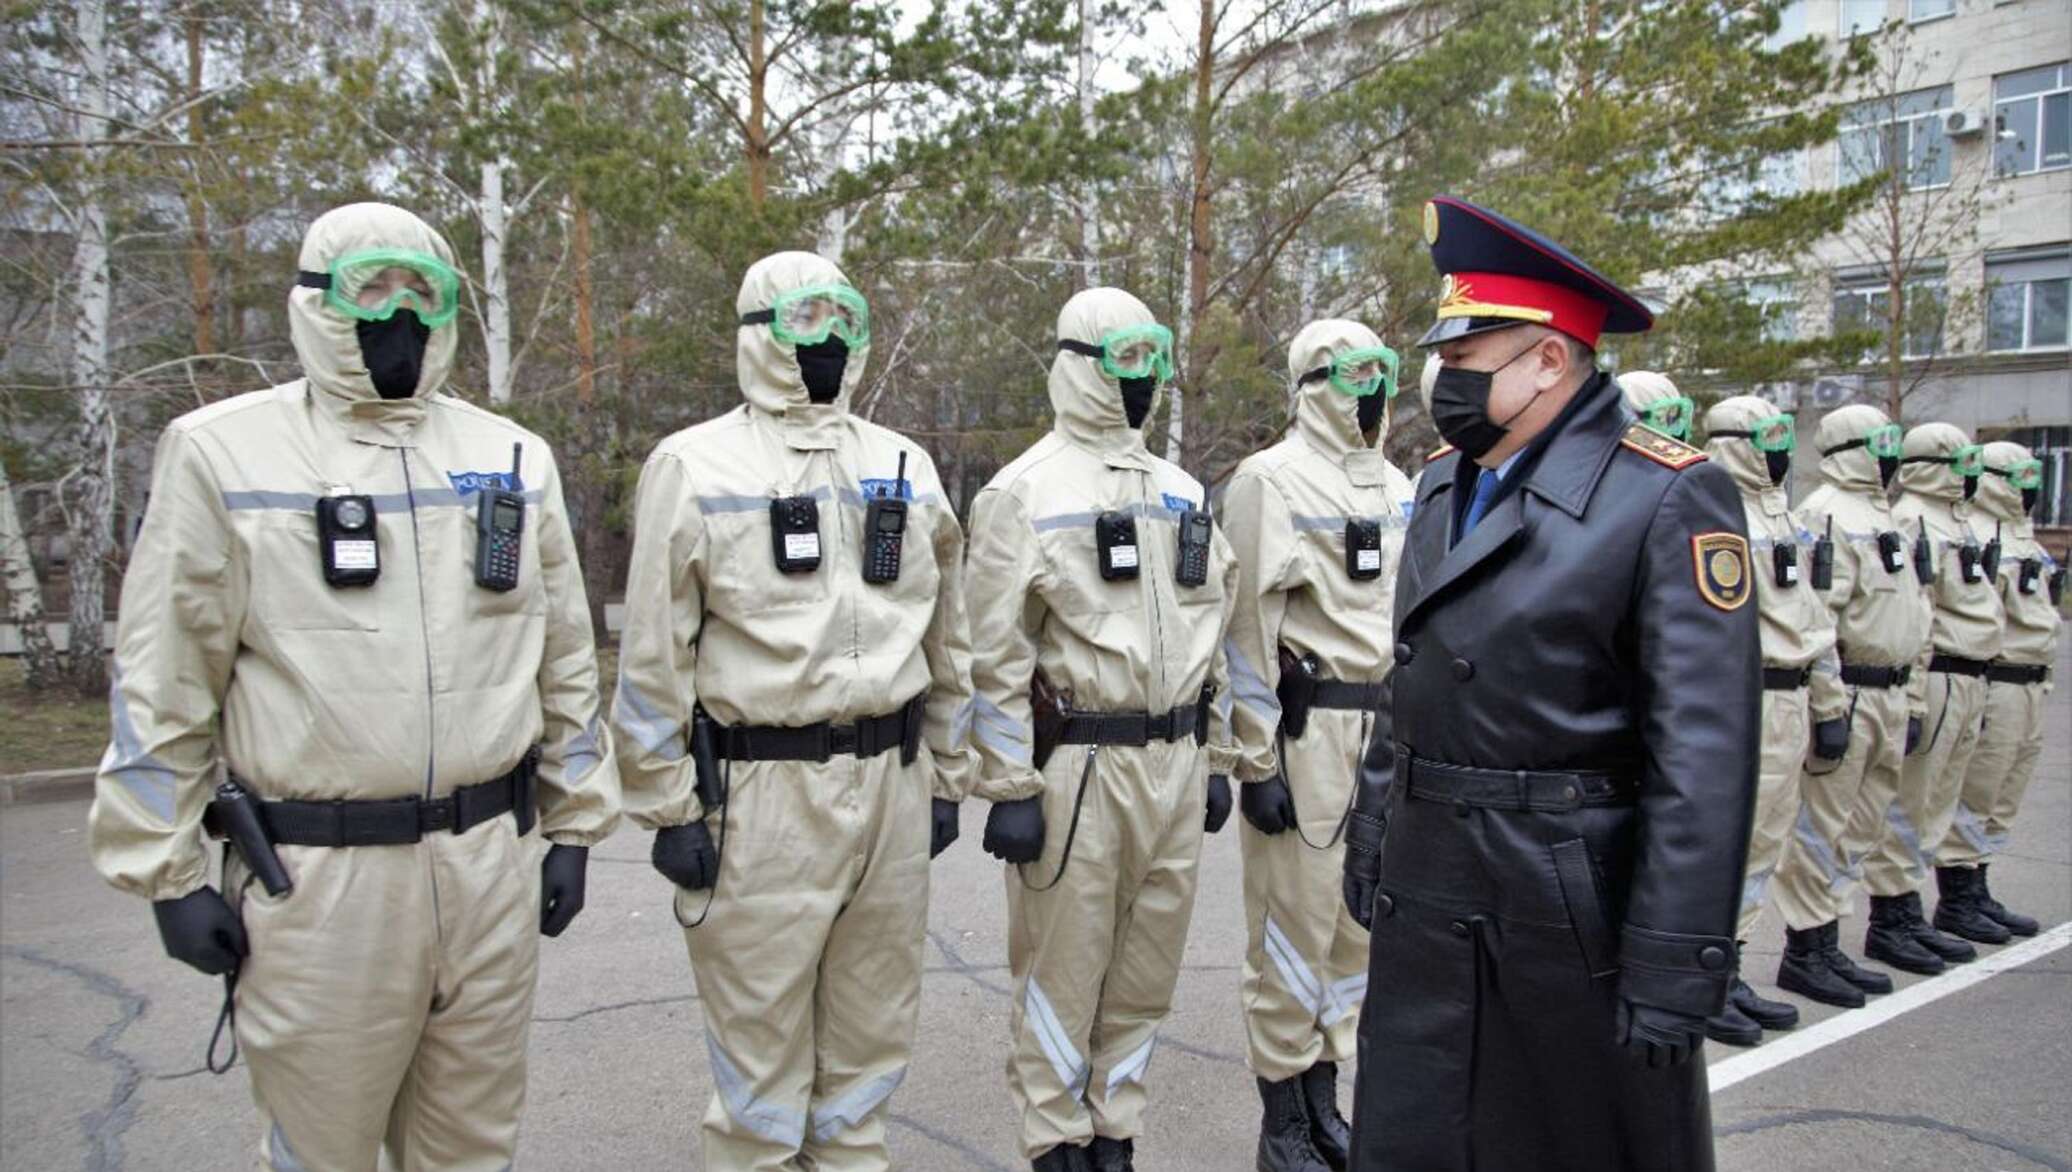 Ковид костюм. Полиция в химзащите. Костюм радиационной защиты. Защитная униформа полиции. Защитный костюм полиции.